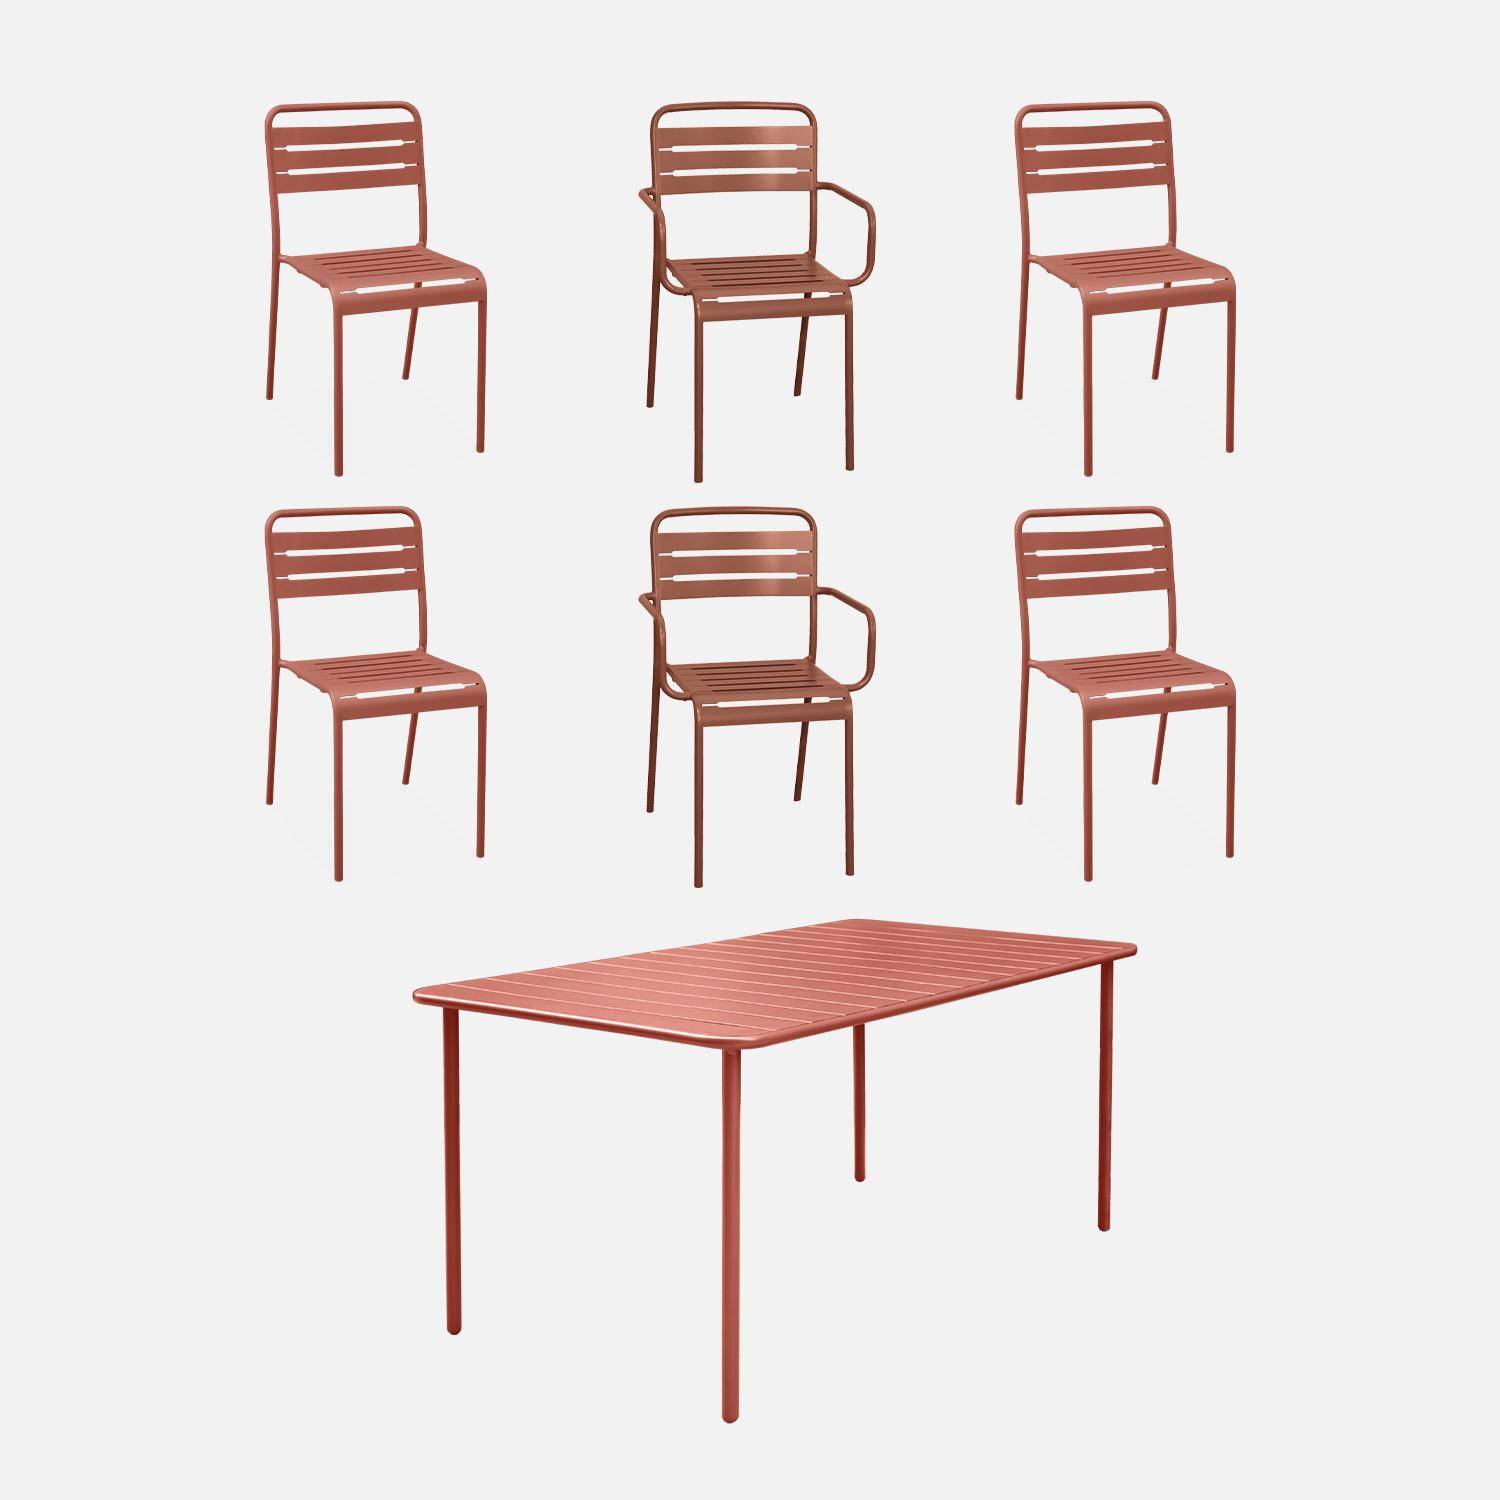 Table de jardin métal + 2 fauteuils et 4 chaises, terracotta, acier traitement anti rouille Photo1